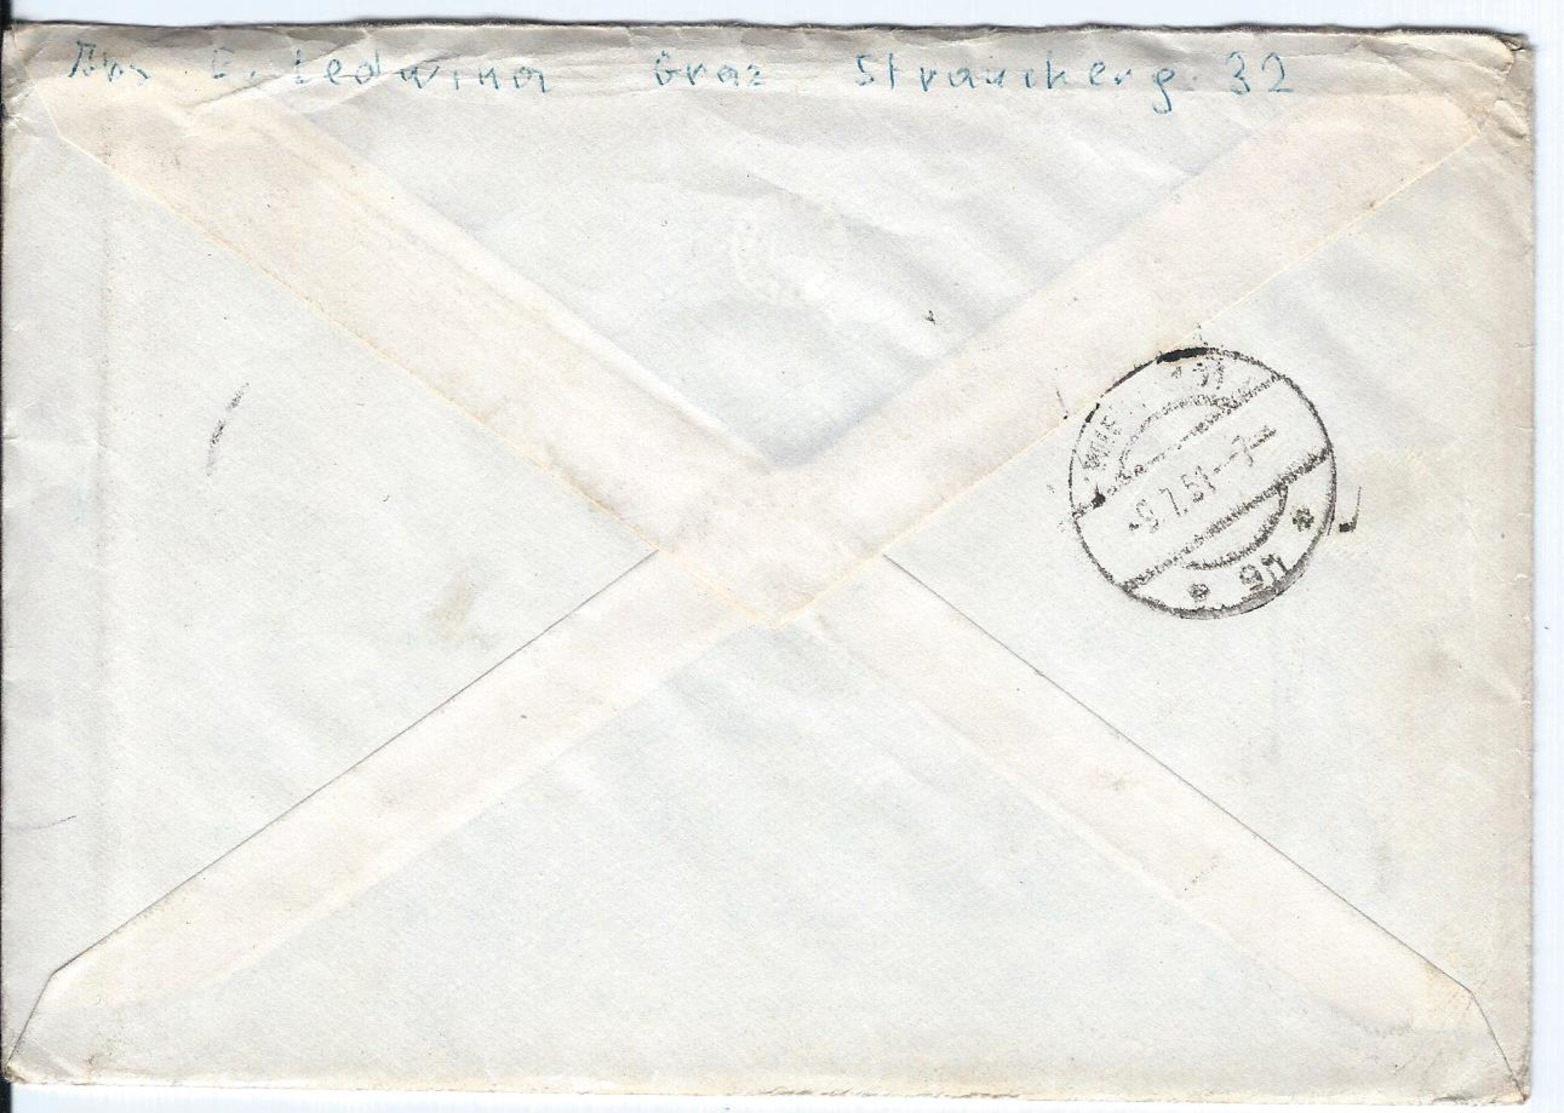 Austria - Österreich Post - Briefmarken - Lettres & Documents